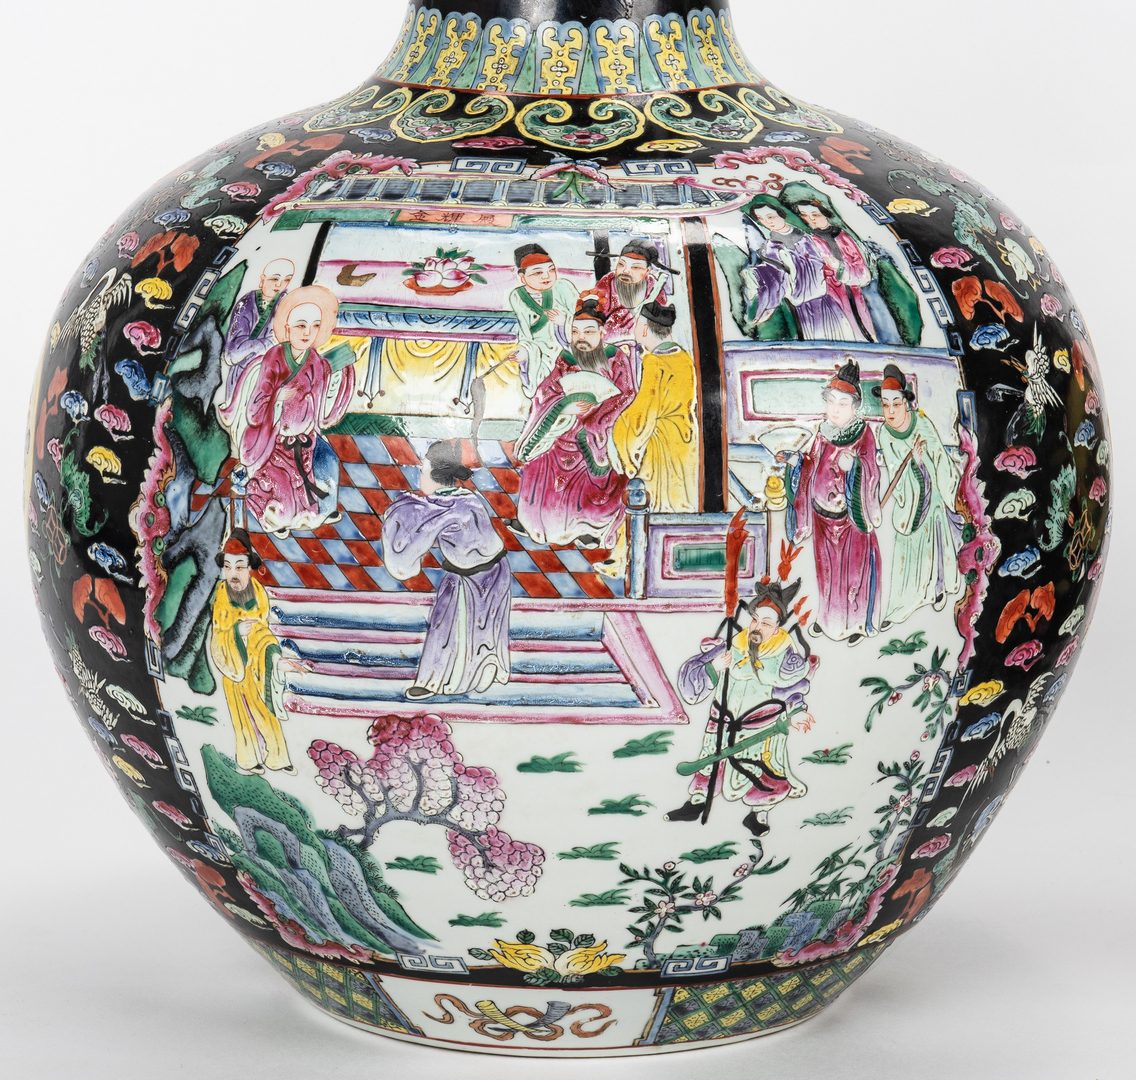 Lot 319: Pr. Chinese Famille Noire Floor Vases